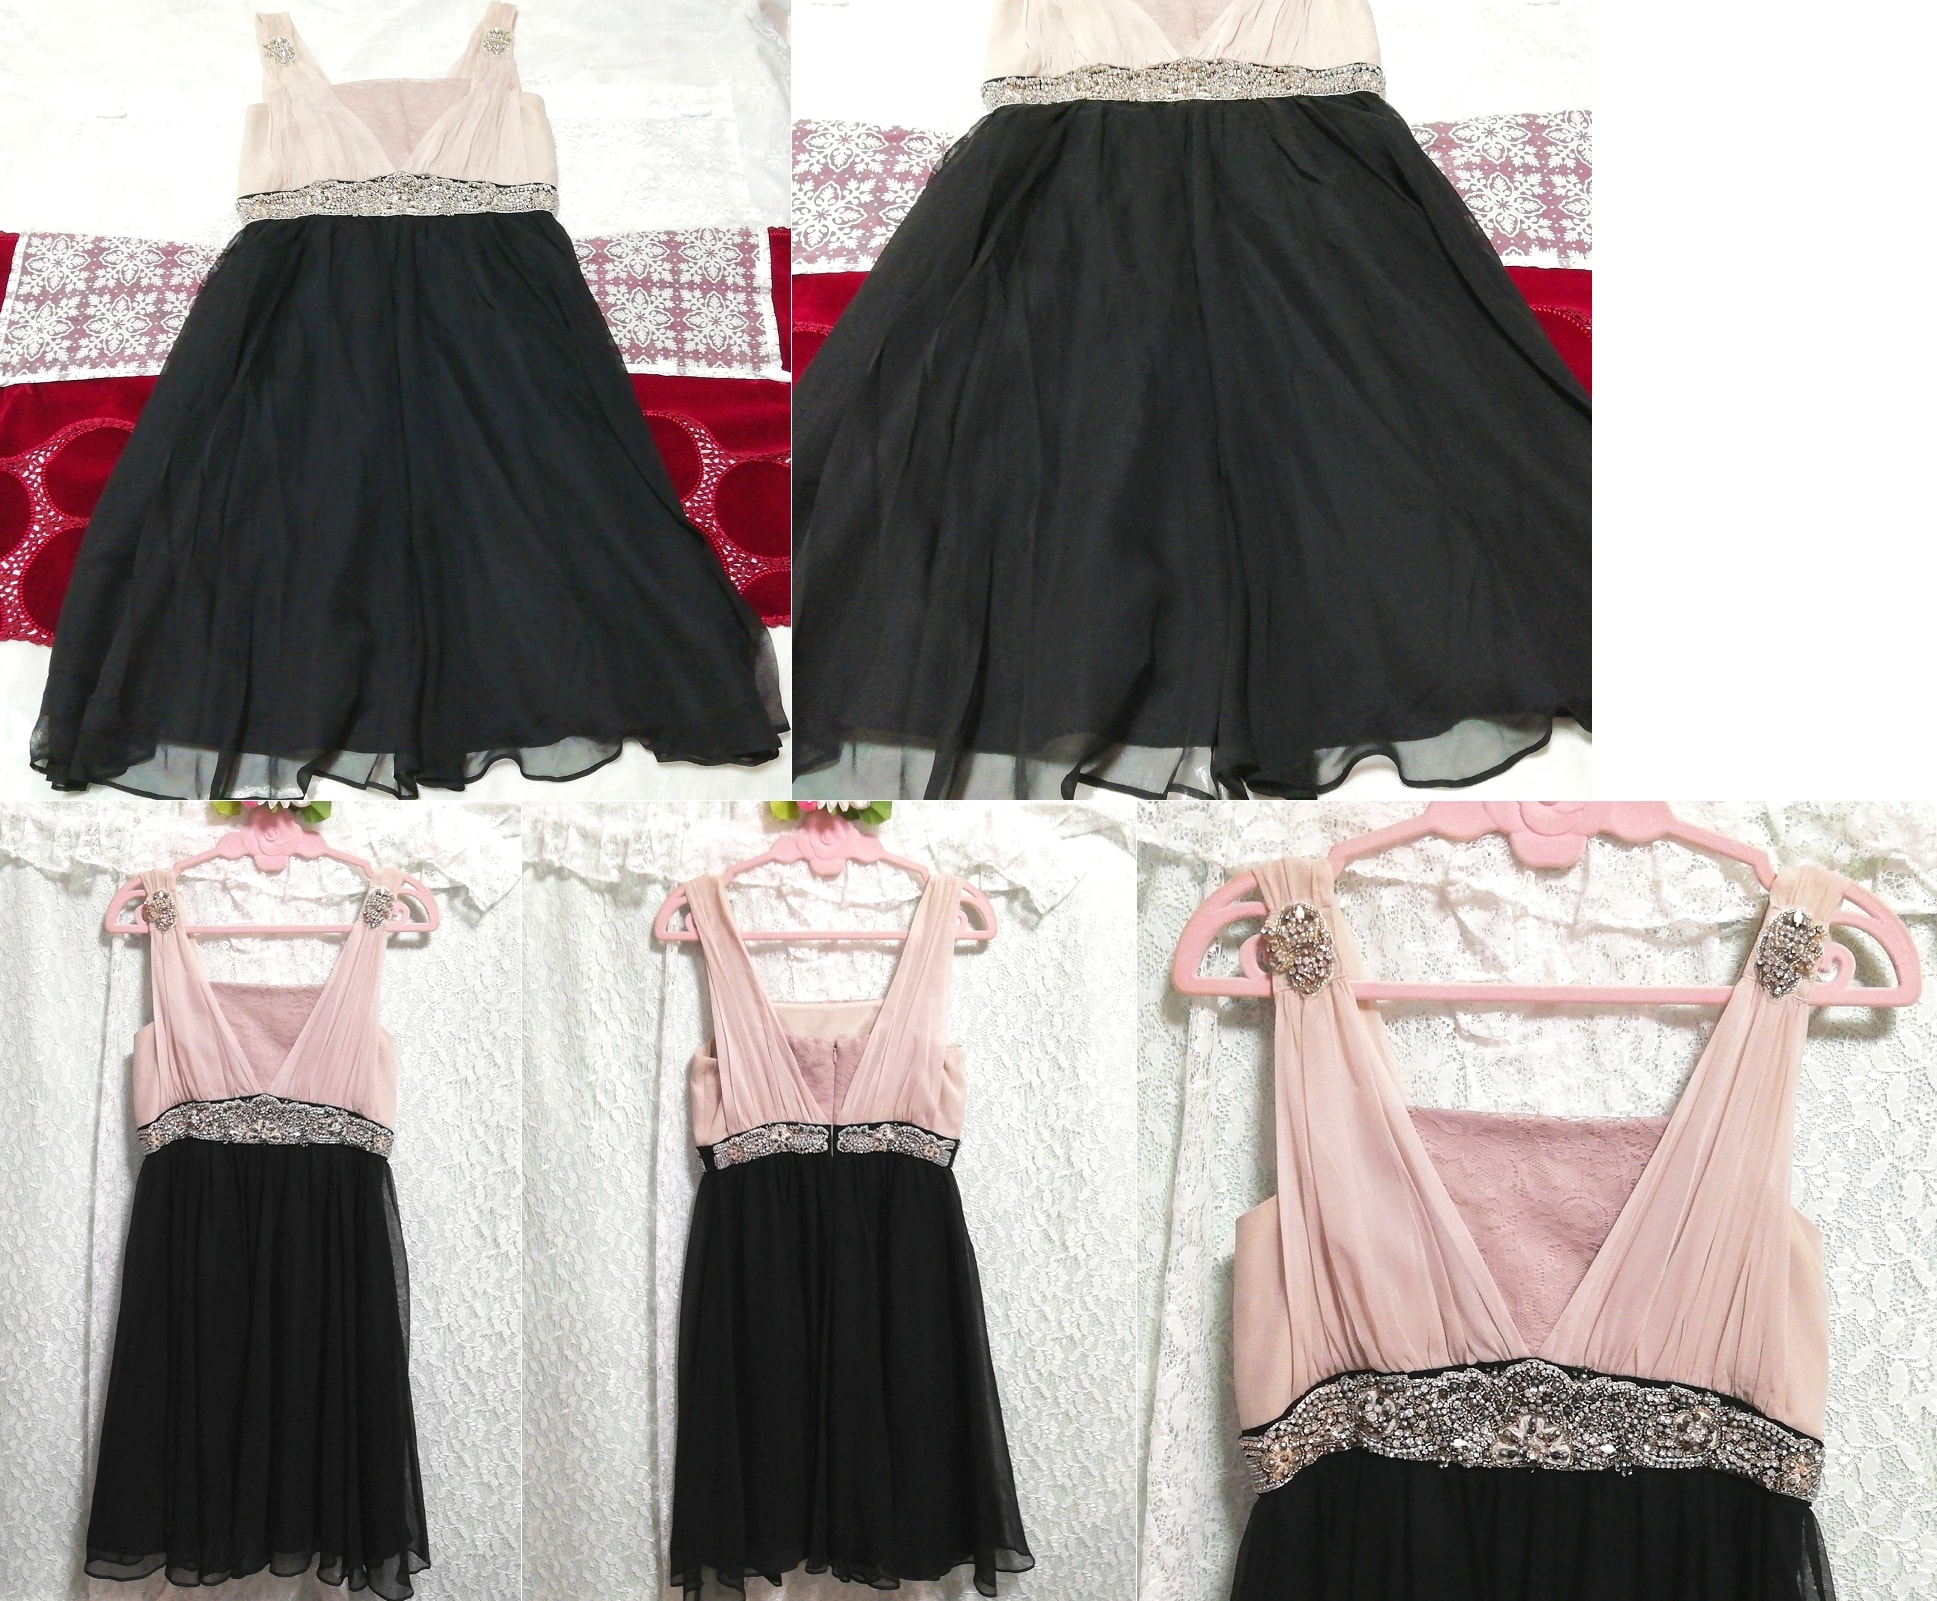 粉色雪纺饰品黑色裙子奢华真丝睡衣连衣裙, 时尚, 女士时装, 睡衣